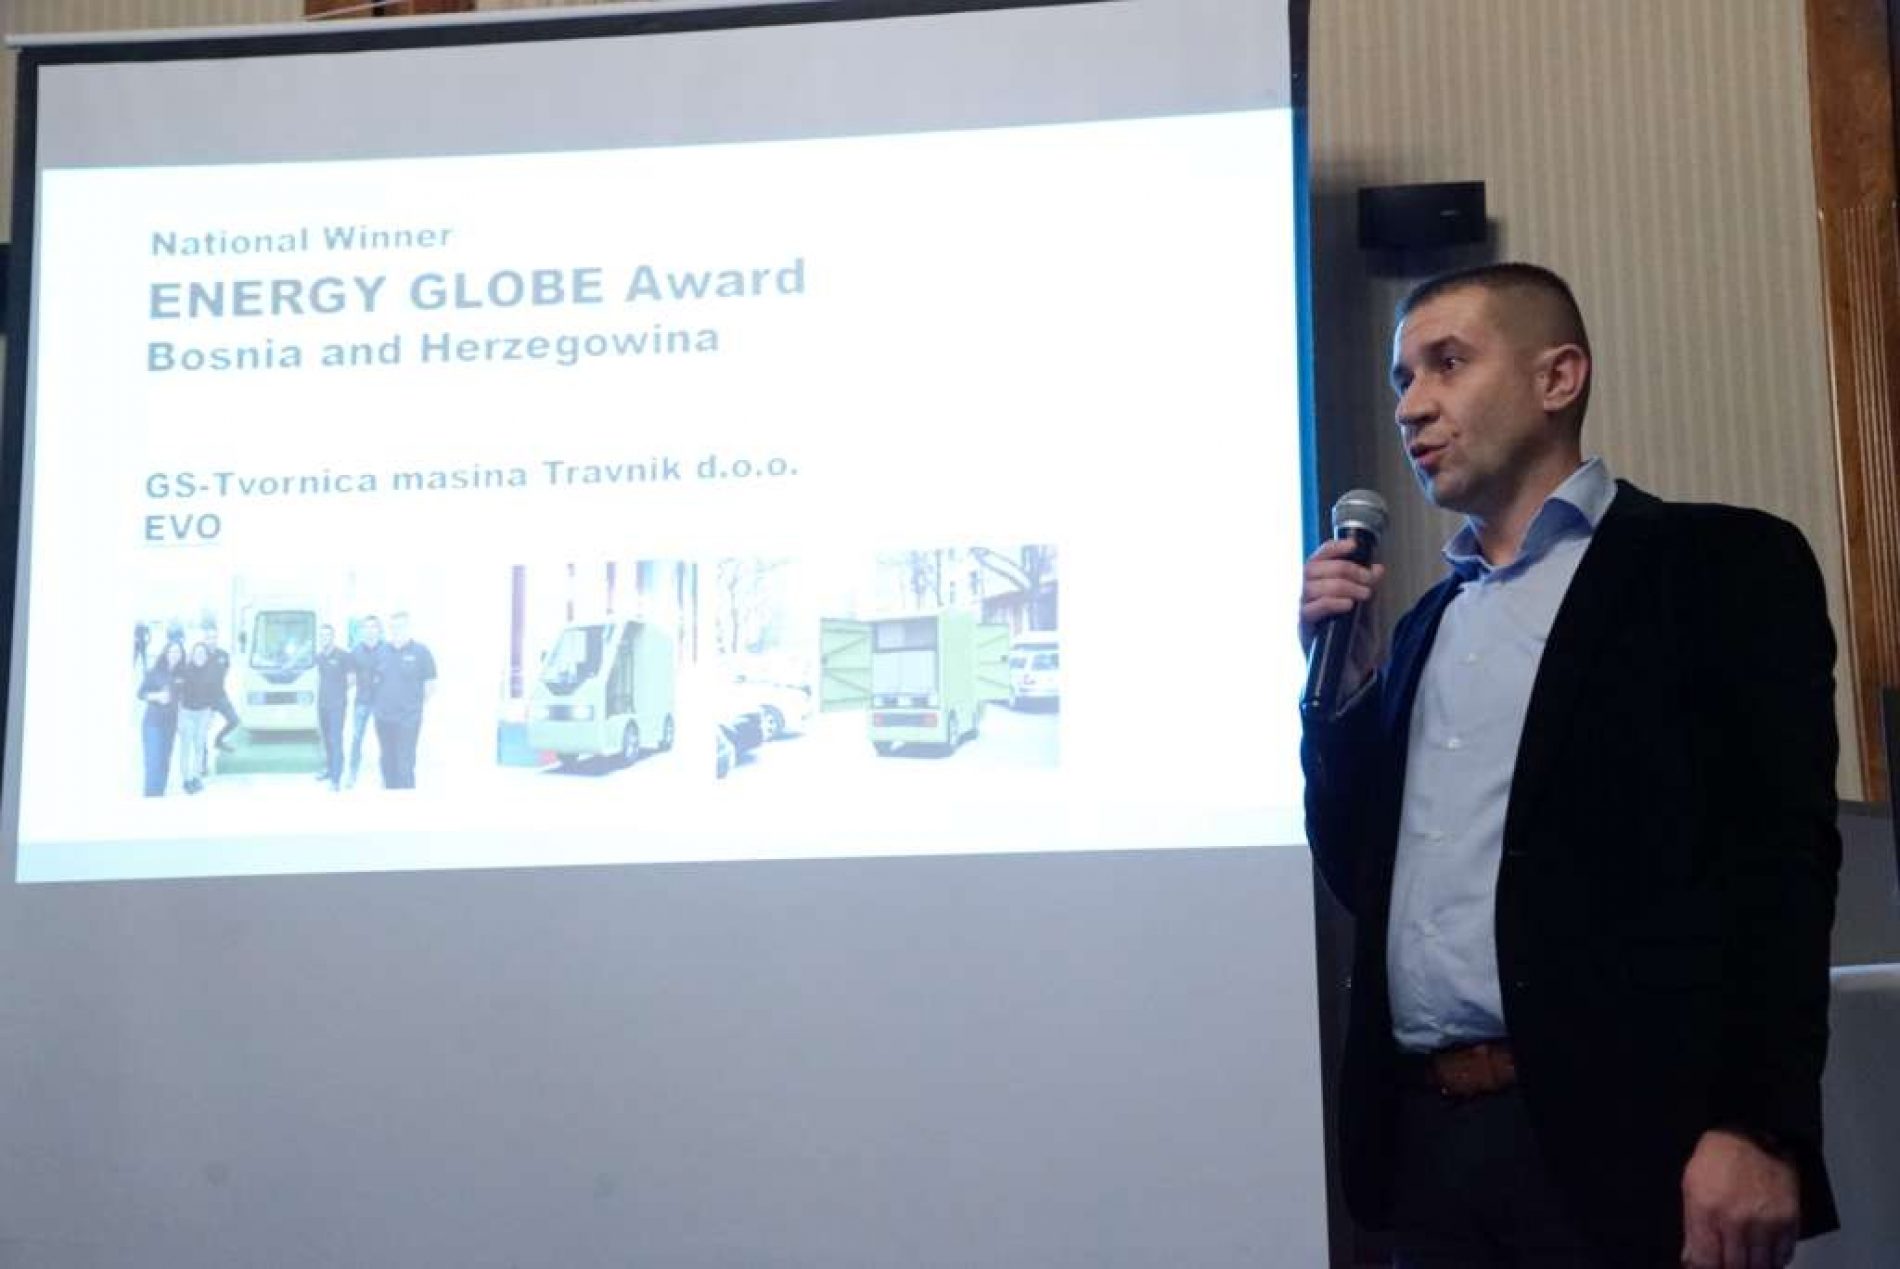 Energy Globe Award za električno vozilo Trornice mašina Travnik